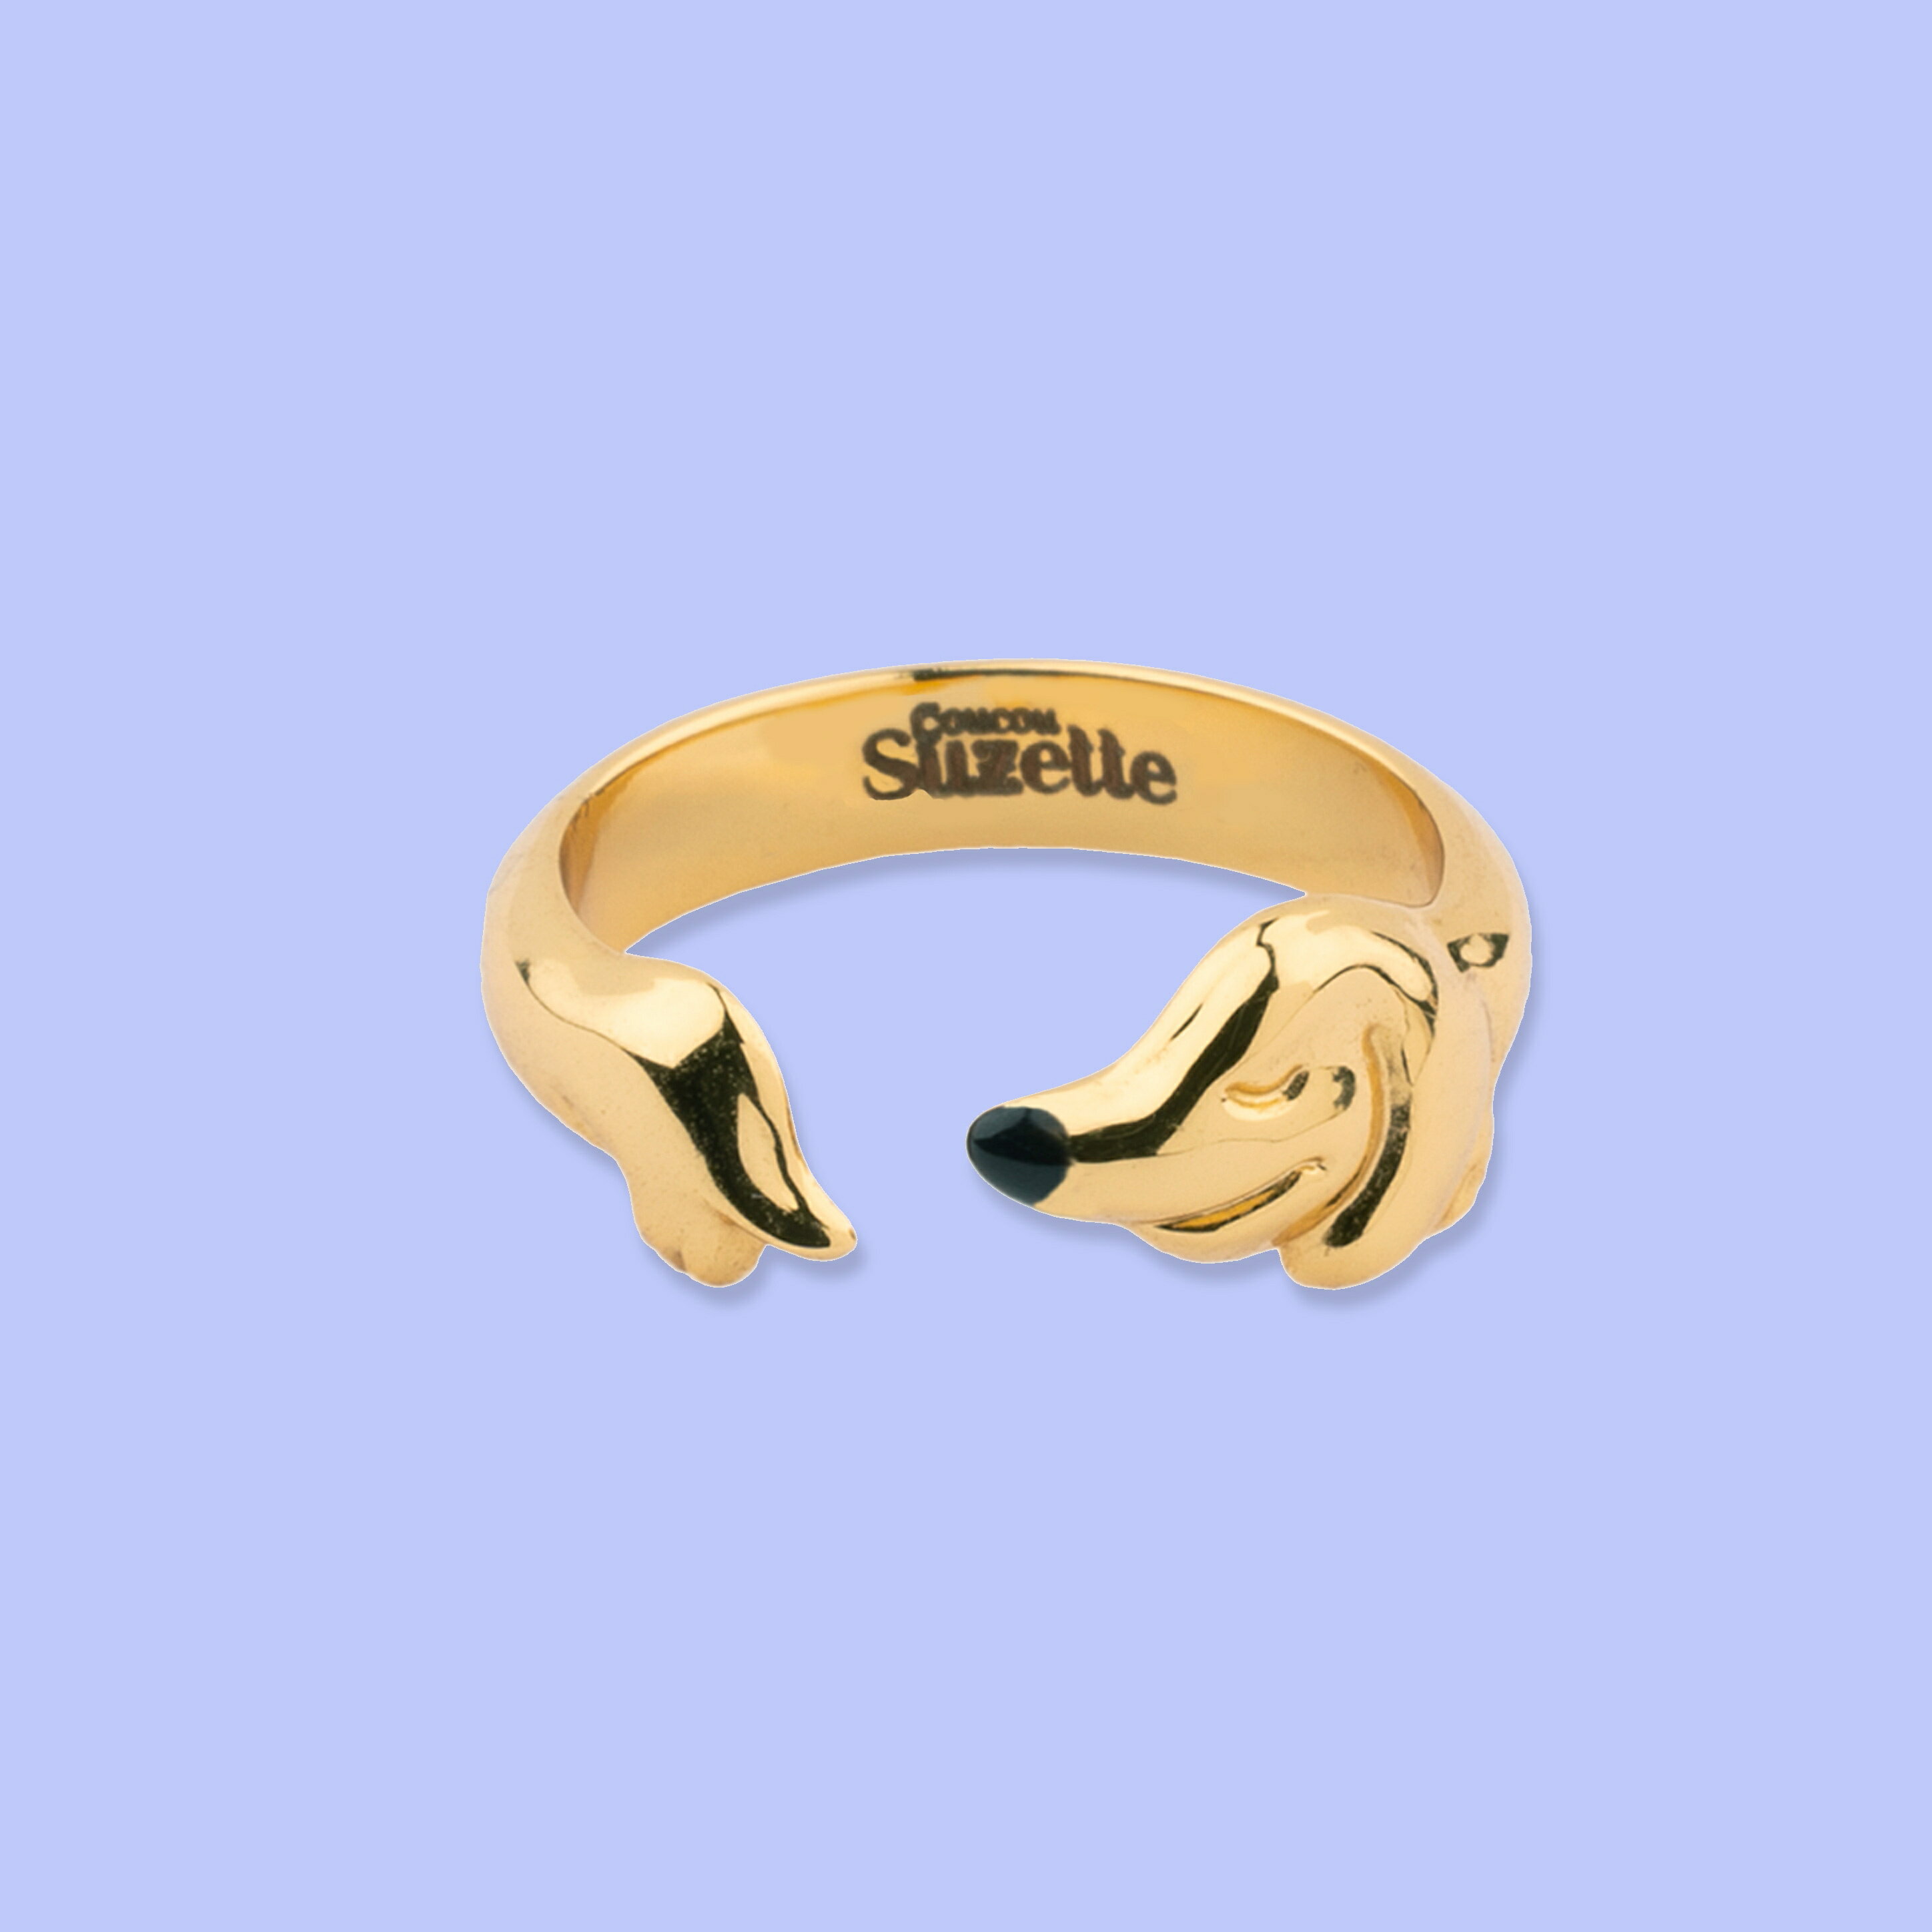 指輪 【公式通販 3,980円以上 送料無料 ブランド袋付き】ククシュゼット 正規商品 アクセ 指輪 おしゃれ 個性的 犬 可愛い フランス ギフト Coucou Suzette ダックスフンド リング Dachshund Ring ゴールド Gold